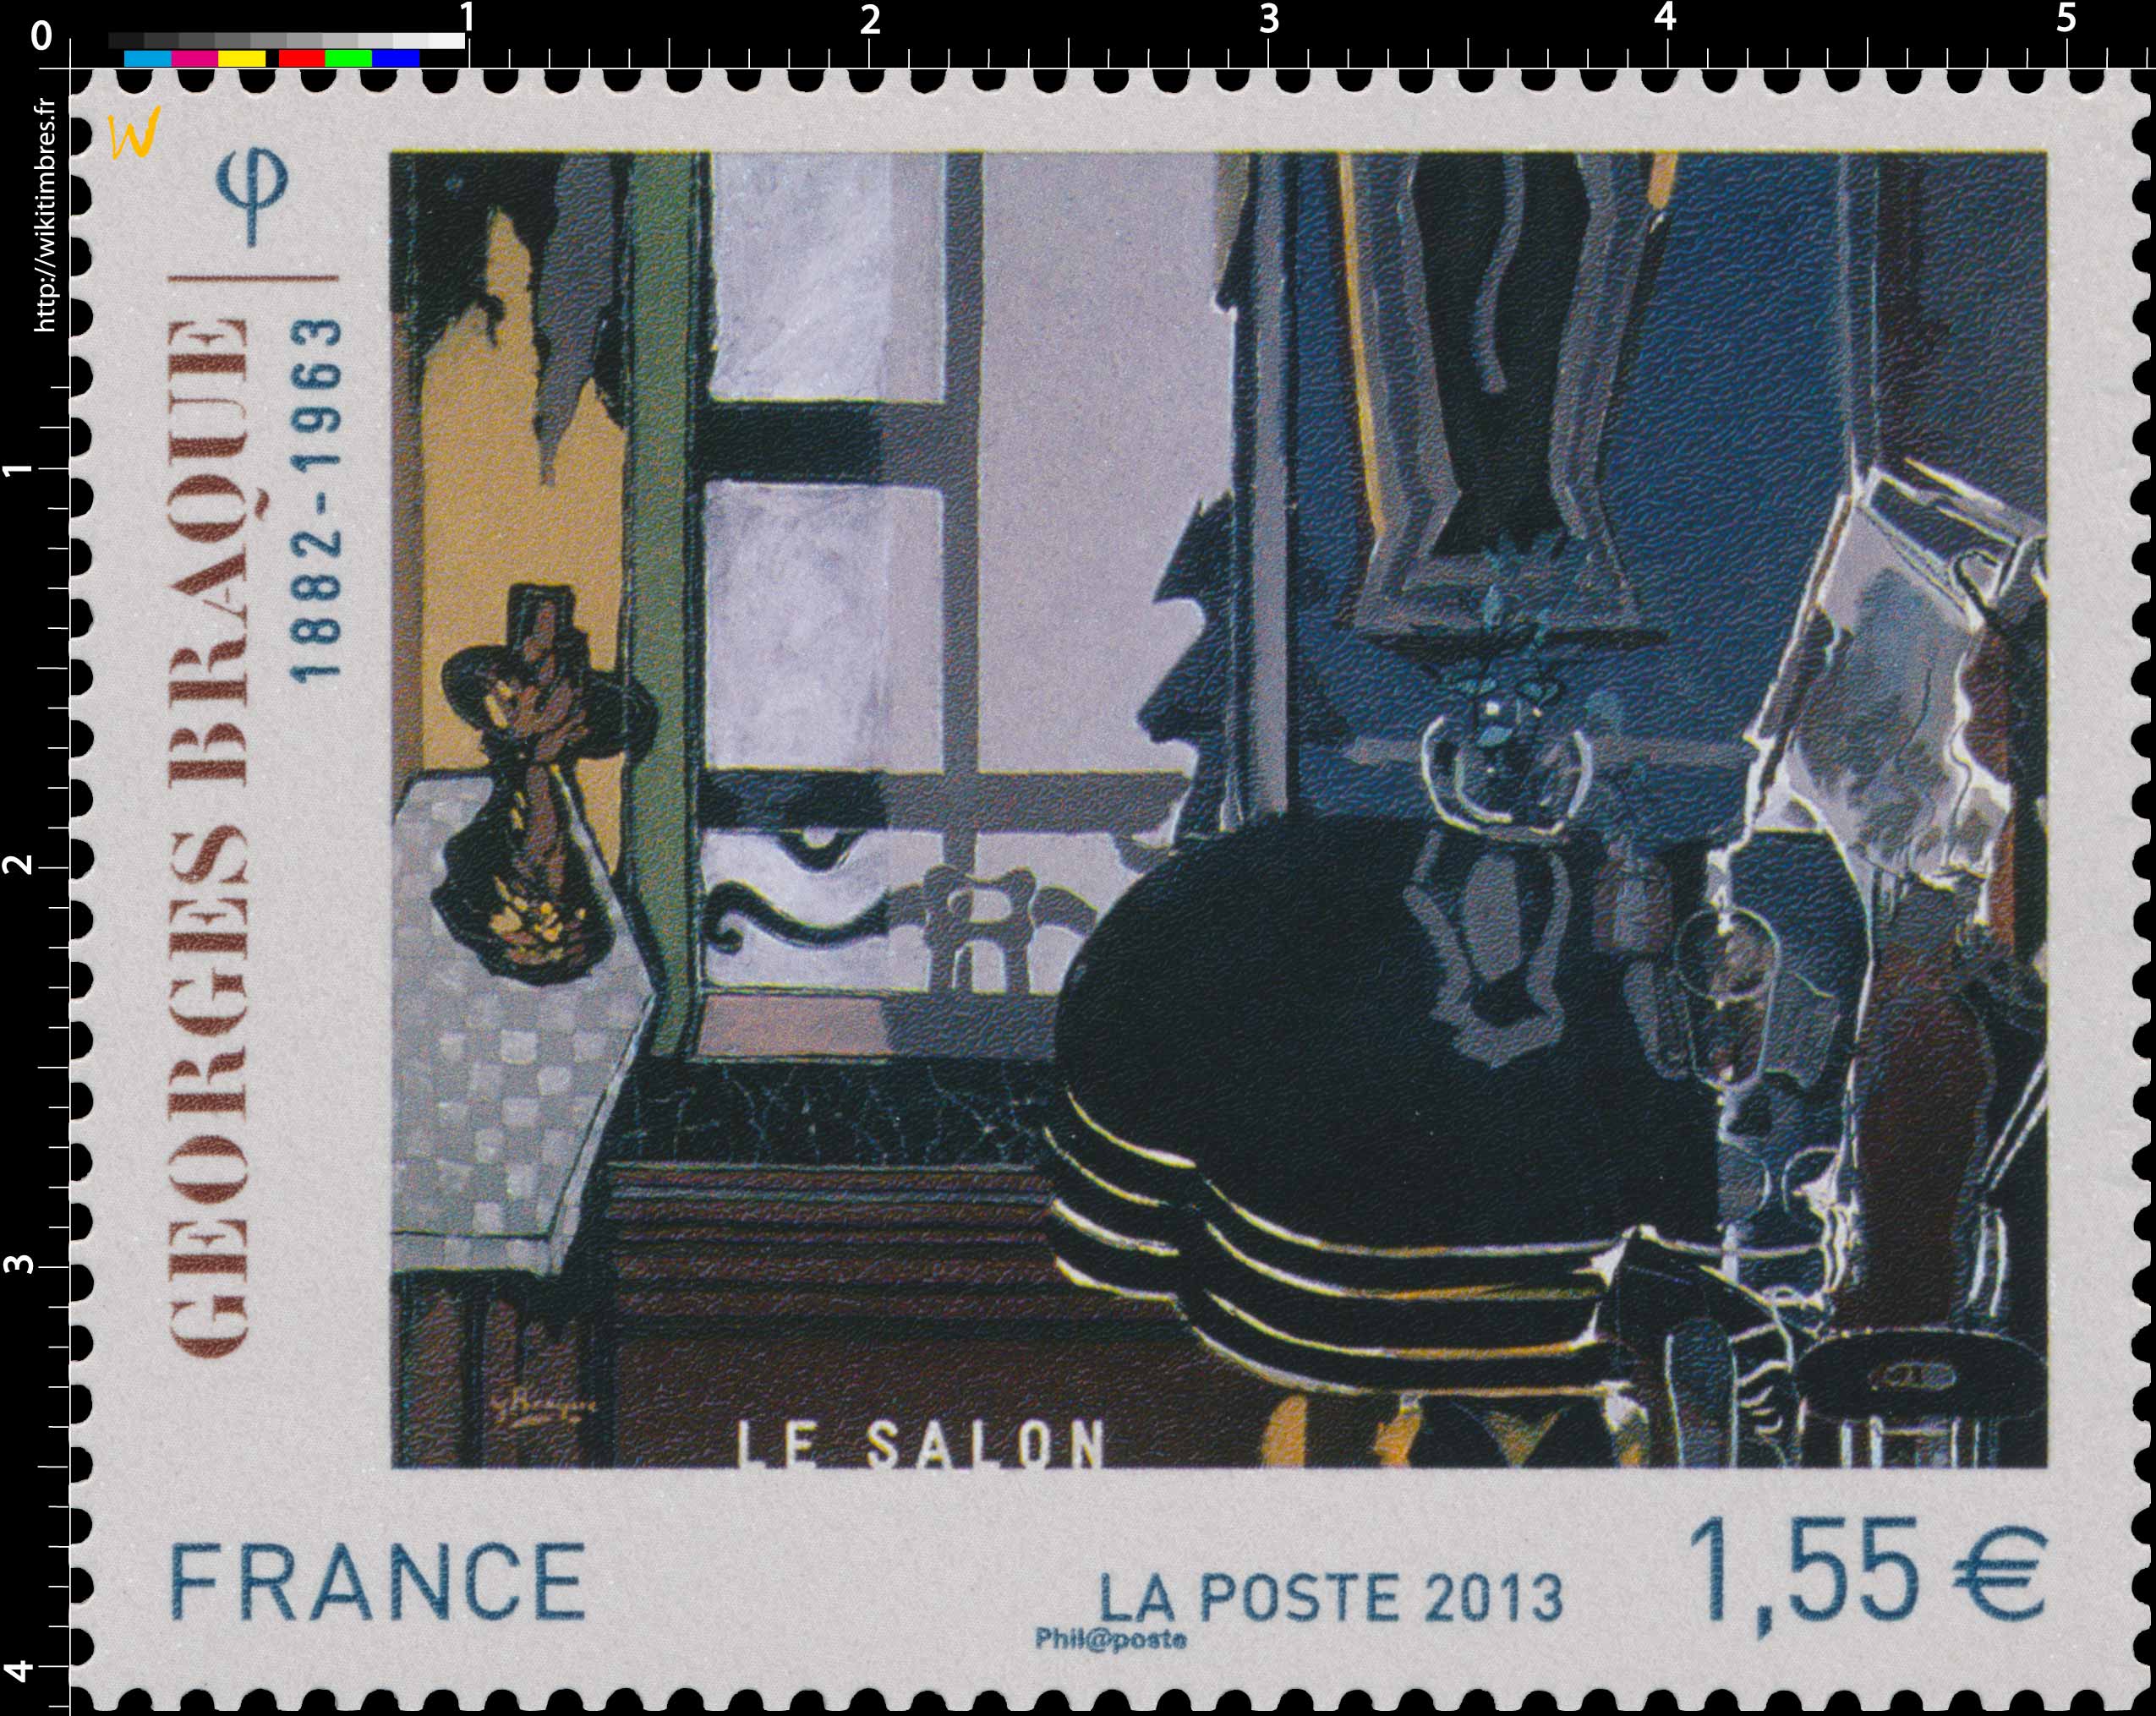 Georges Braque 1882 - 1963